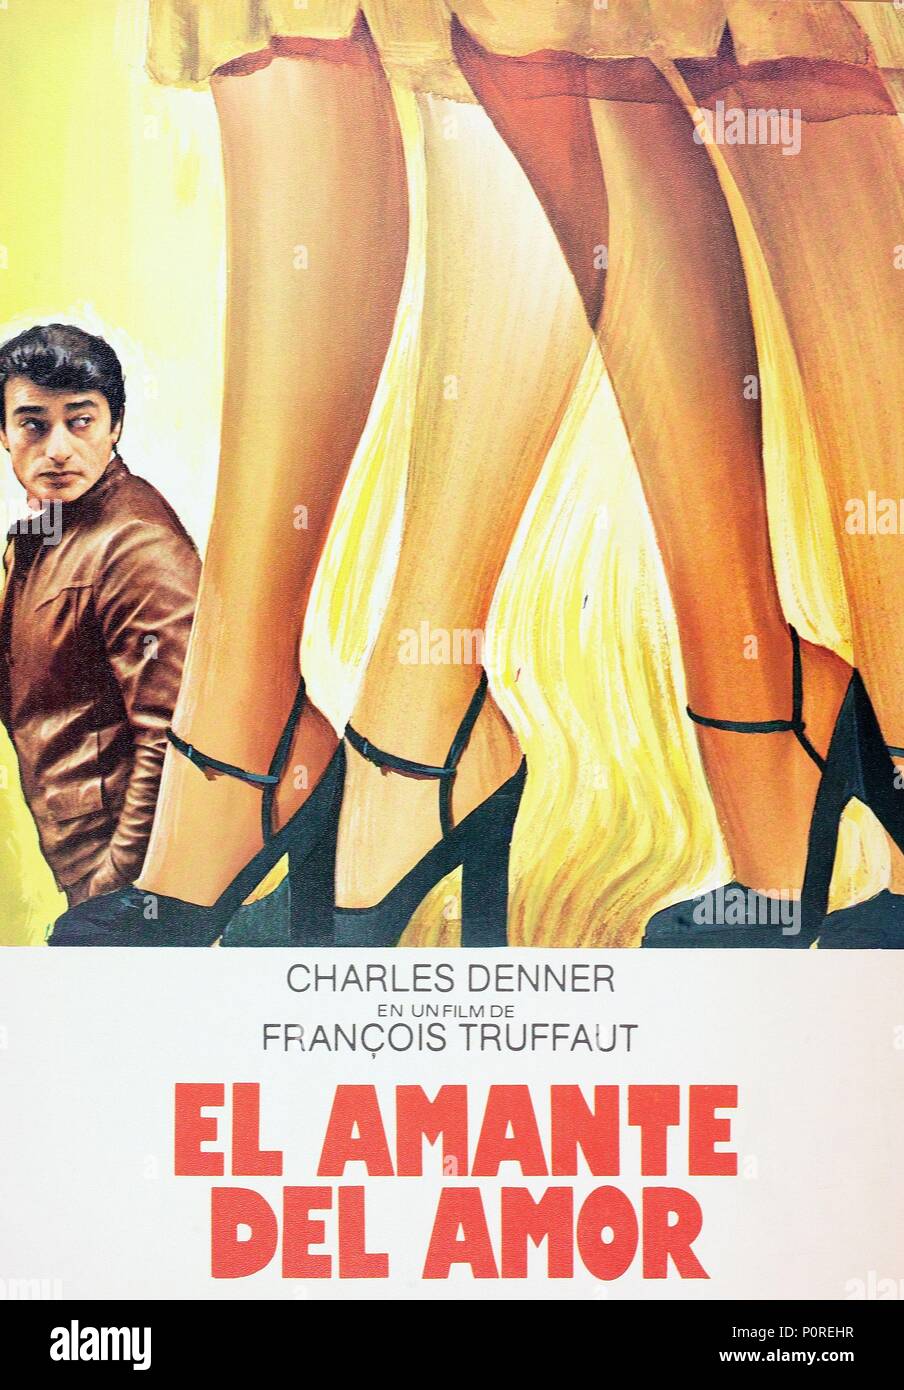 El título de la película original: L' Homme qui AIMAIT Les Femmes. Título  en inglés: El hombre que amaba a las mujeres, el. El director de cine:  Francois Truffaut. Año: 1977. Crédito: